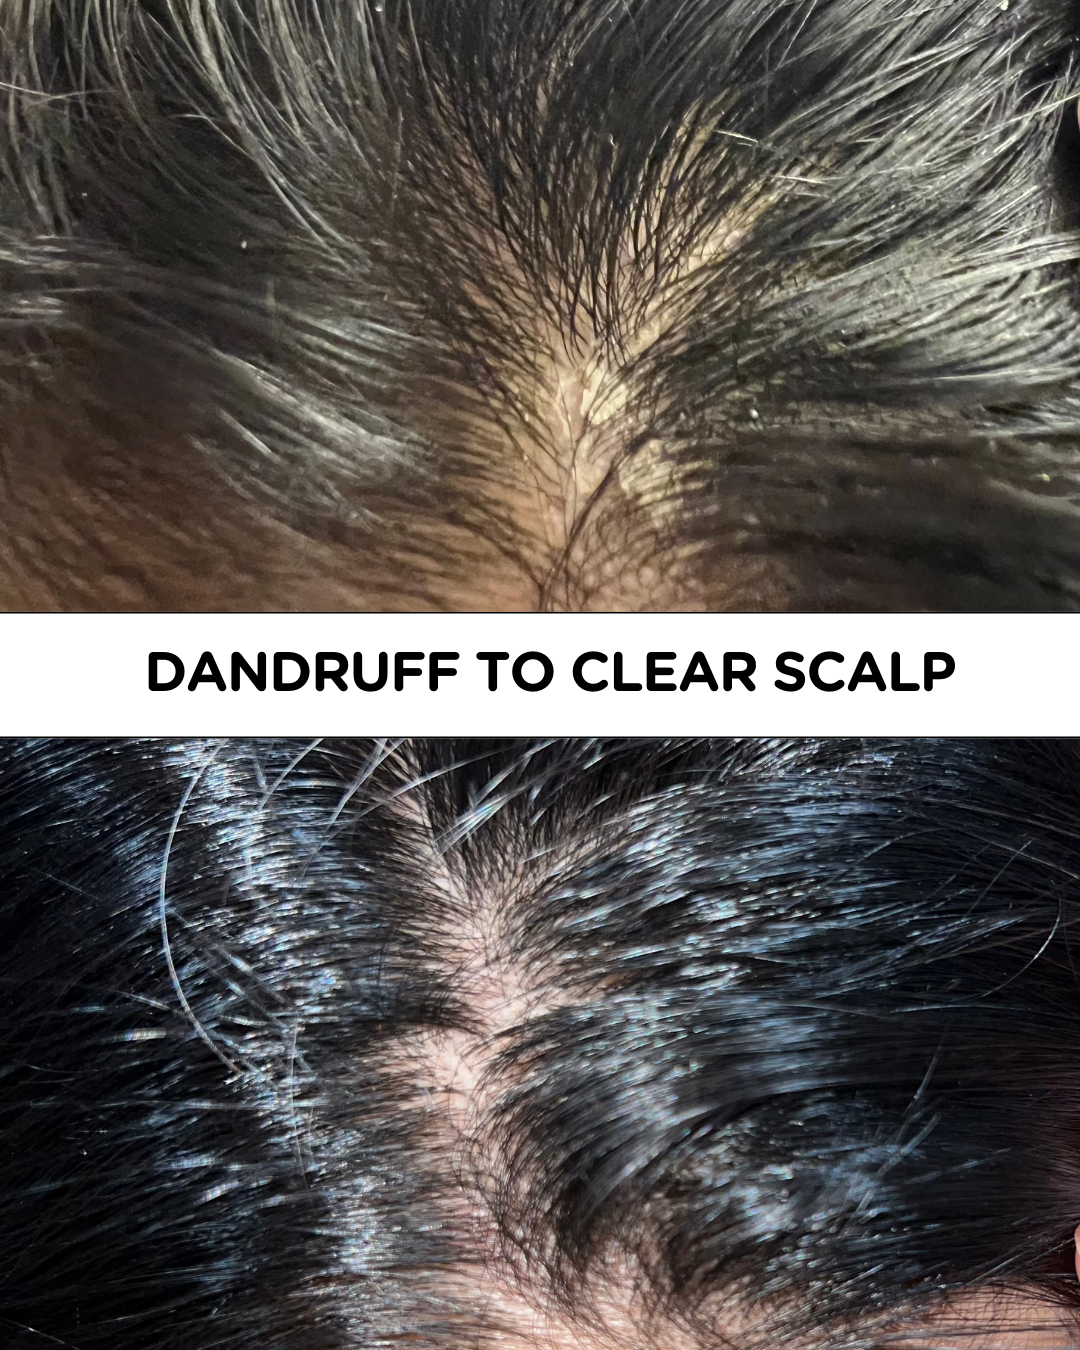 Dandruff to clear scalp